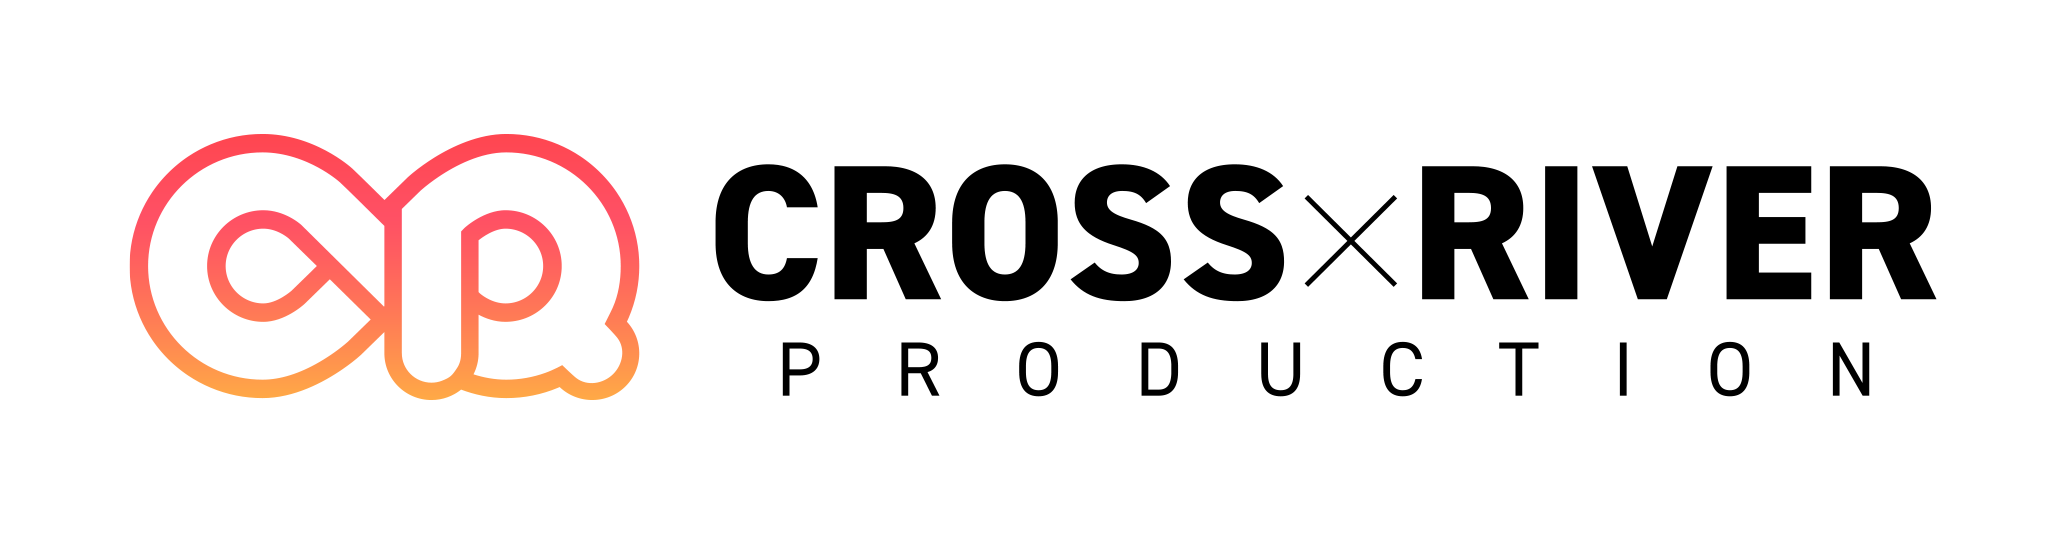 【会場受け取り用】CROSS×RIVER PRODUCTION (クリプロ) 